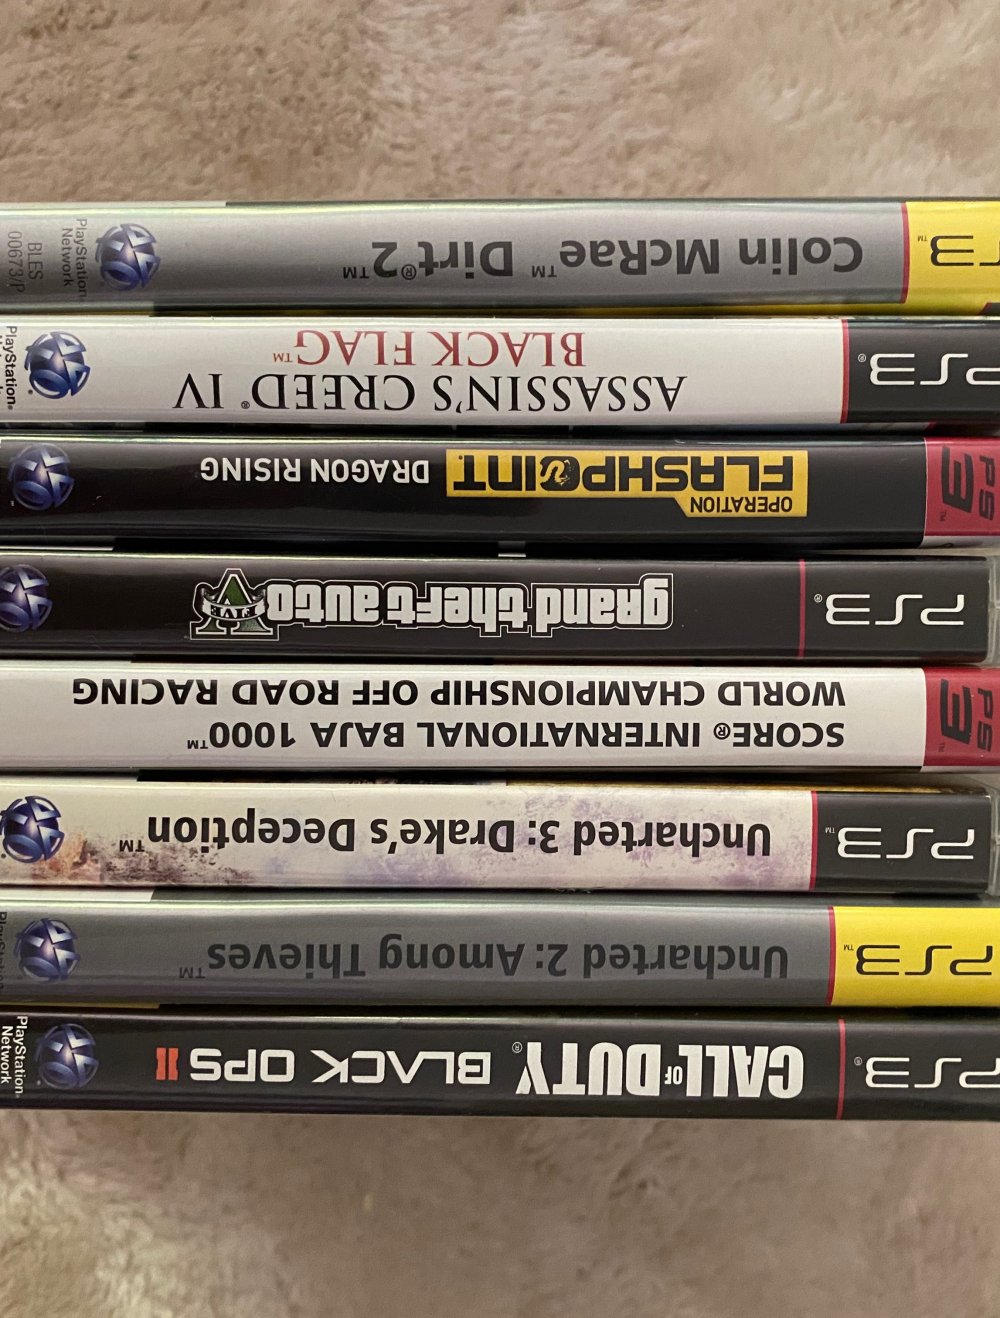 Verschiedene Playstation 3 Spiele